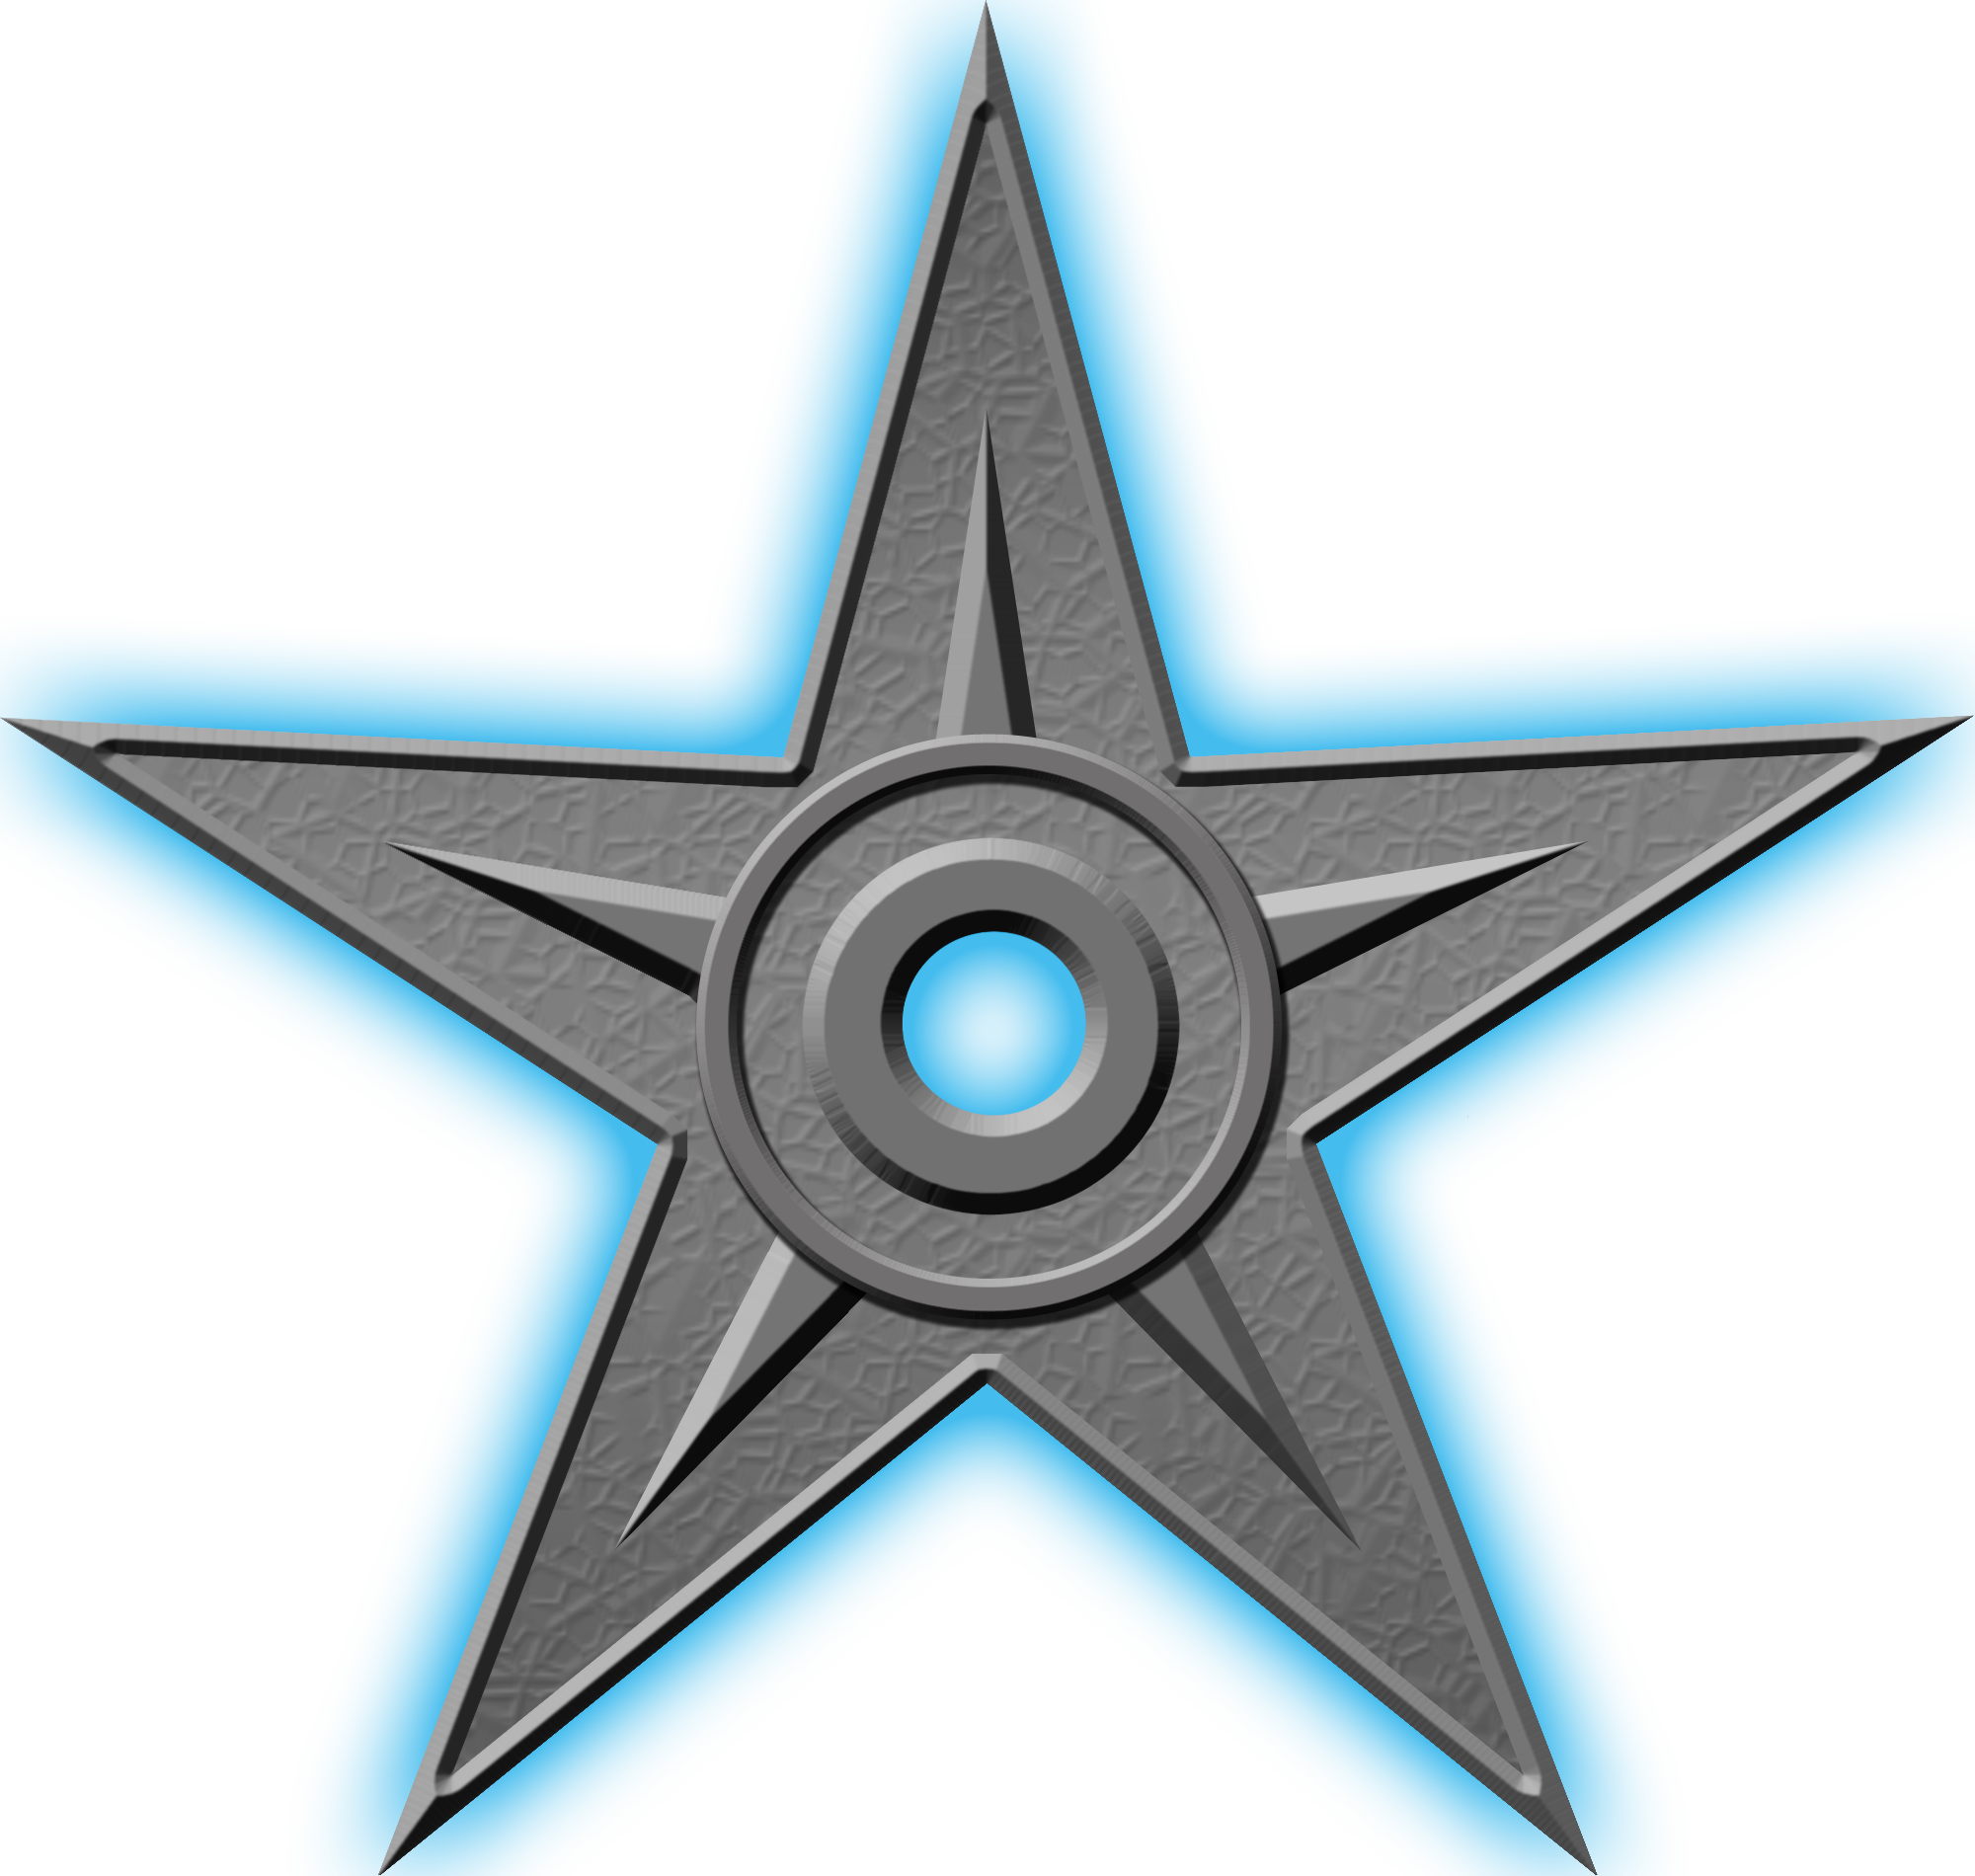 Орден #1 «За выдающиеся заслуги», присвоен 1 июня 2008 участником Кондратьев за «молодому и мудрому арбитру эффективного АК-5»